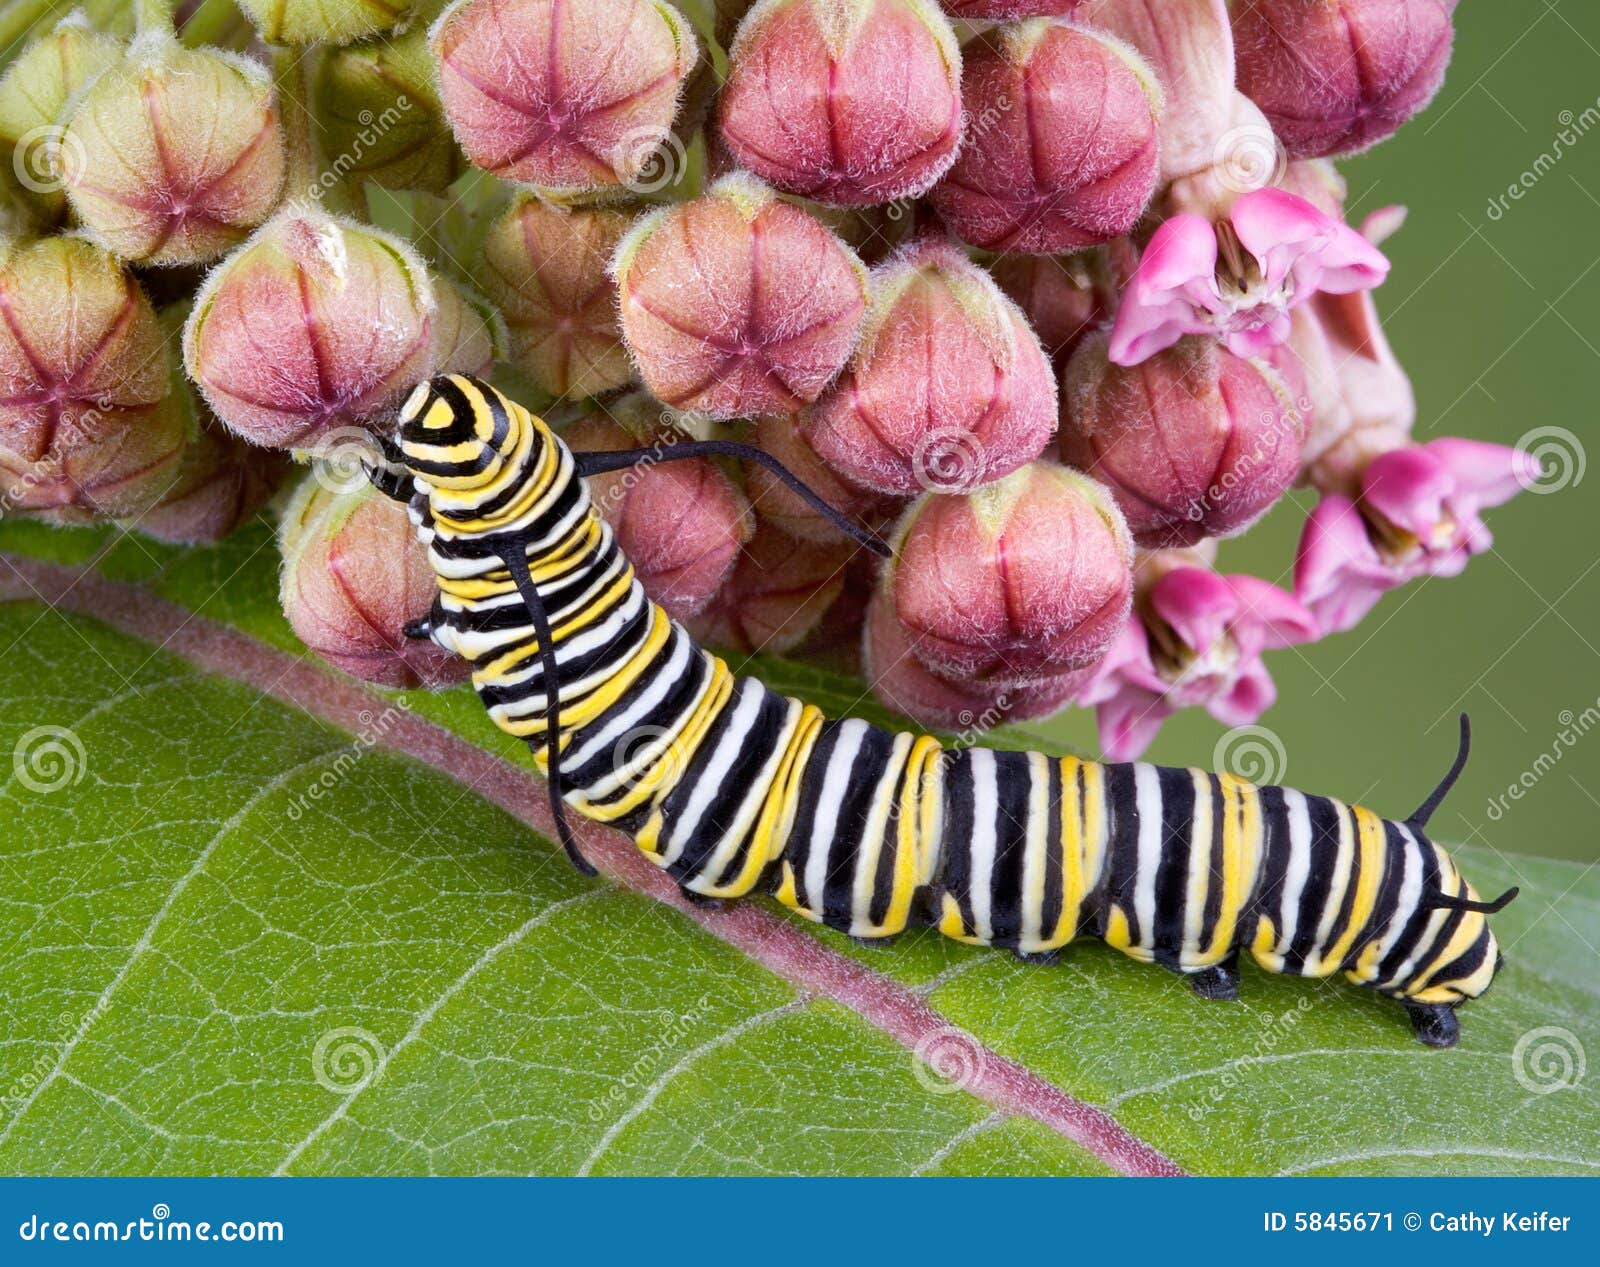 monarch caterpillar on milkweed